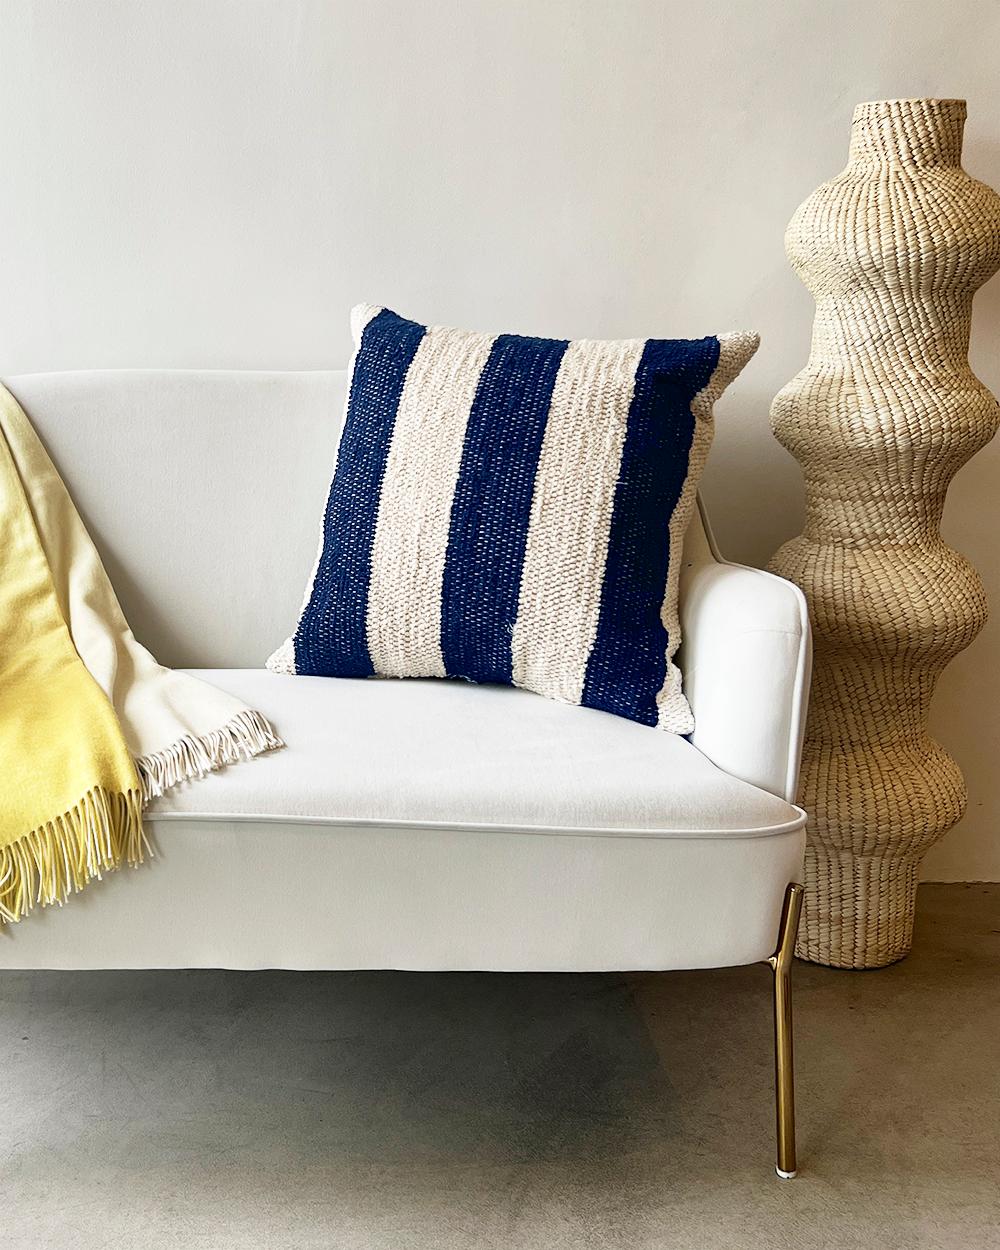 Dieses marineblaue und cremefarbene Baumwollkissen ist aus dicker, handgewebter Baumwolle gefertigt und eignet sich perfekt für stark frequentierte Bereiche wie die Couch im Wohnzimmer. Legen Sie zwei passende Kissen auf jede Seite der Couch oder